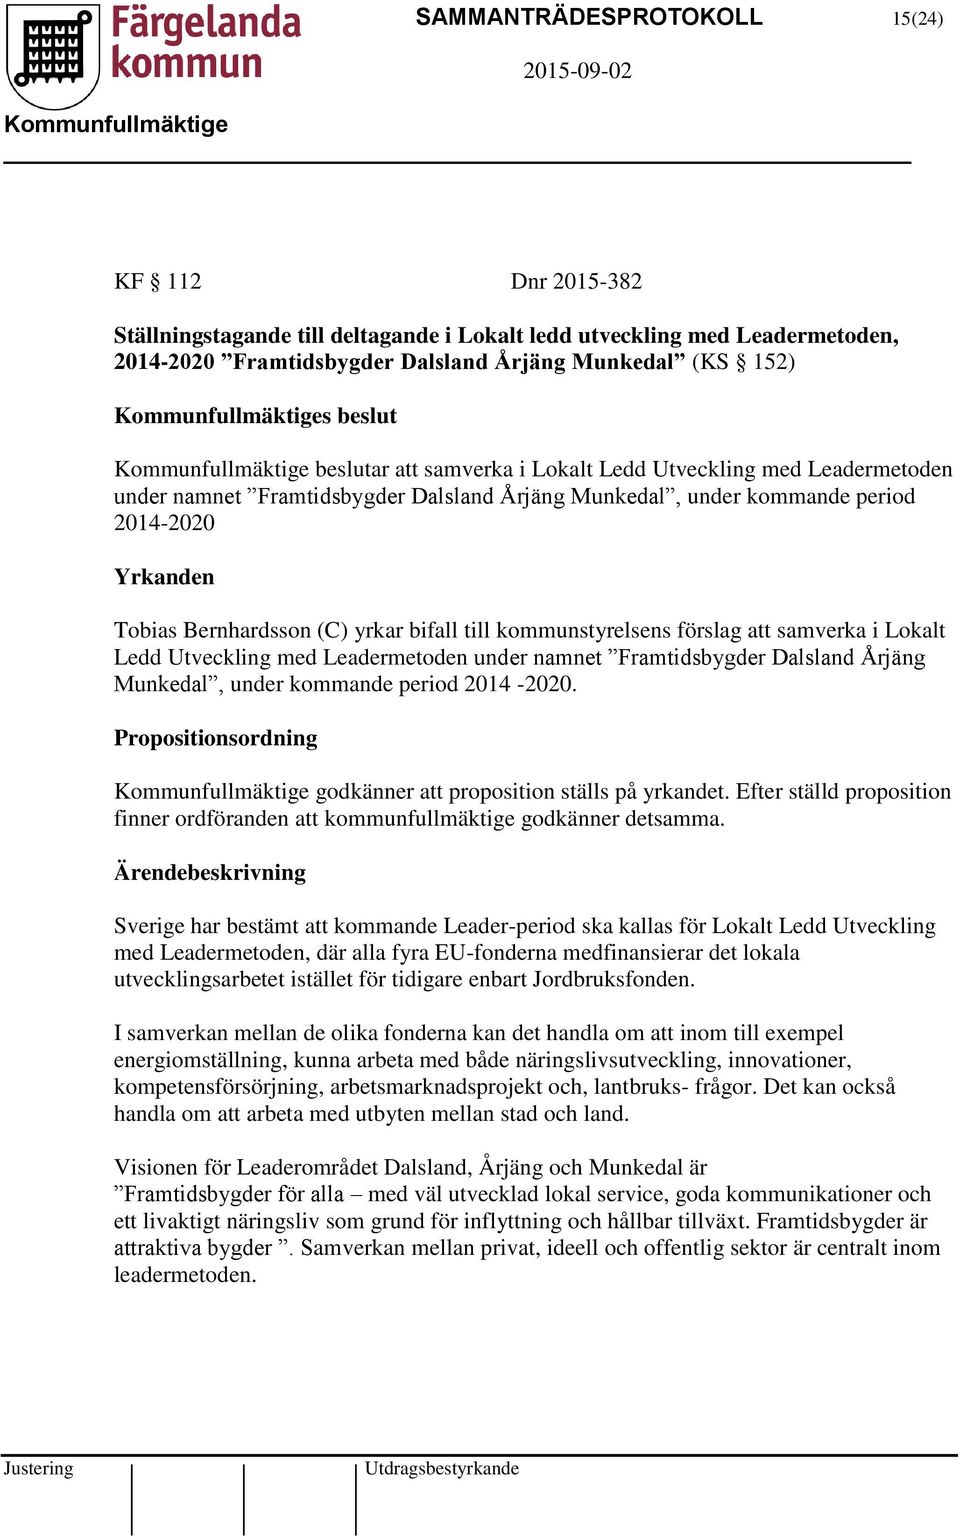 till kommunstyrelsens förslag att samverka i Lokalt Ledd Utveckling med Leadermetoden under namnet Framtidsbygder Dalsland Årjäng Munkedal, under kommande period 2014-2020.